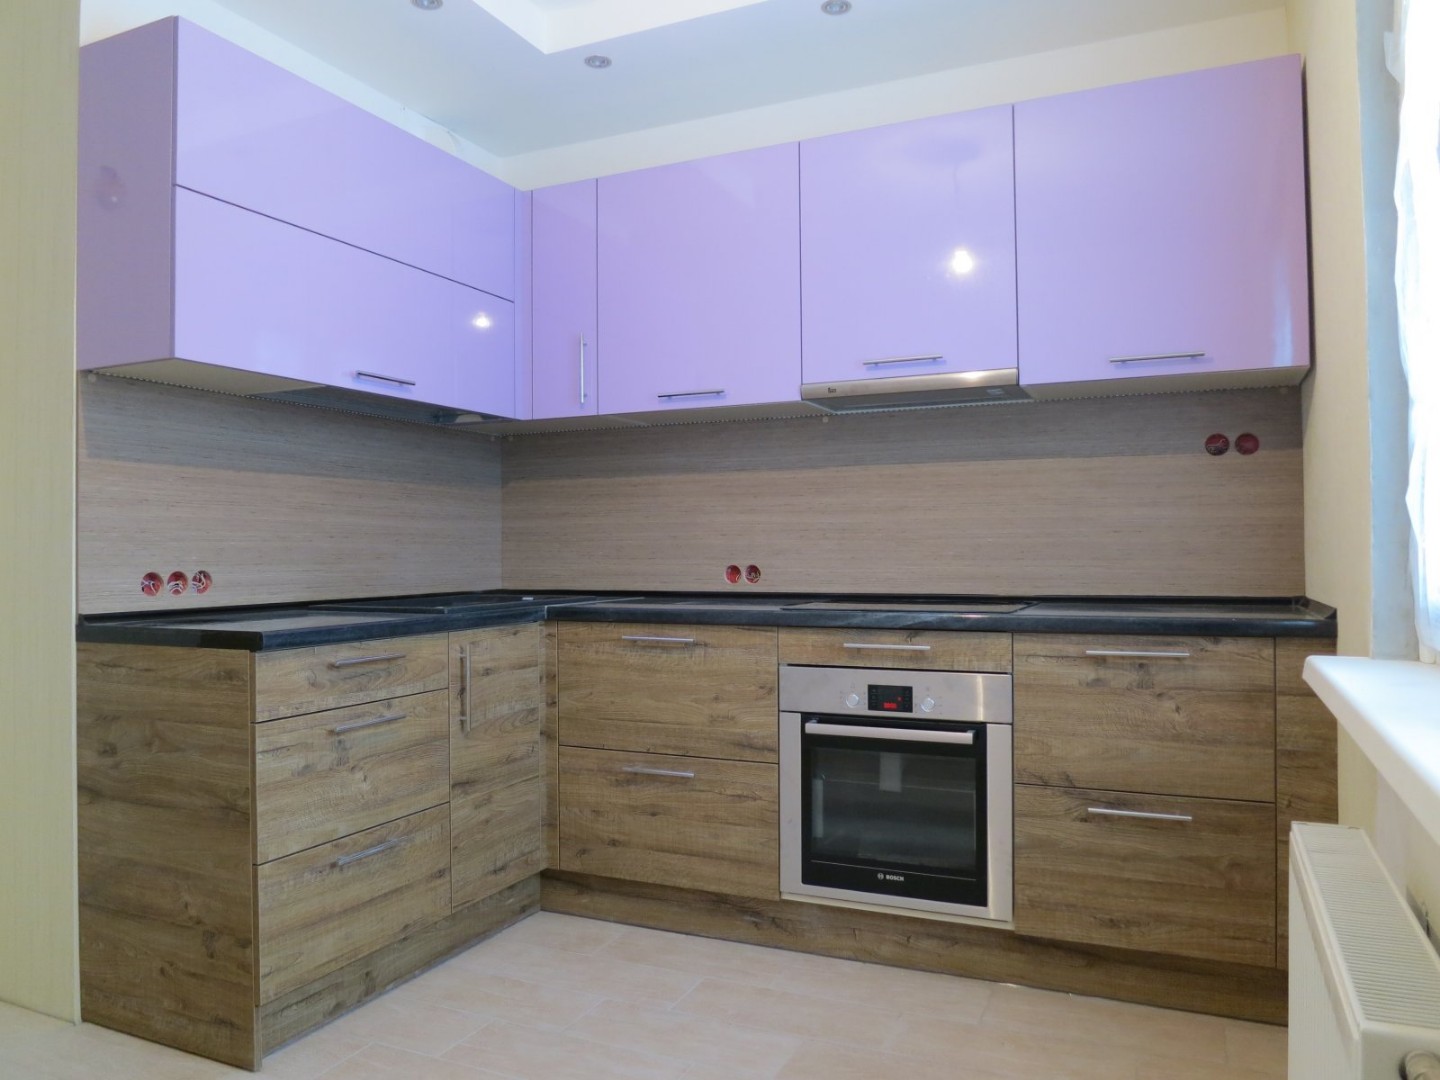 Комбинированная кухня фото с двумя цветами